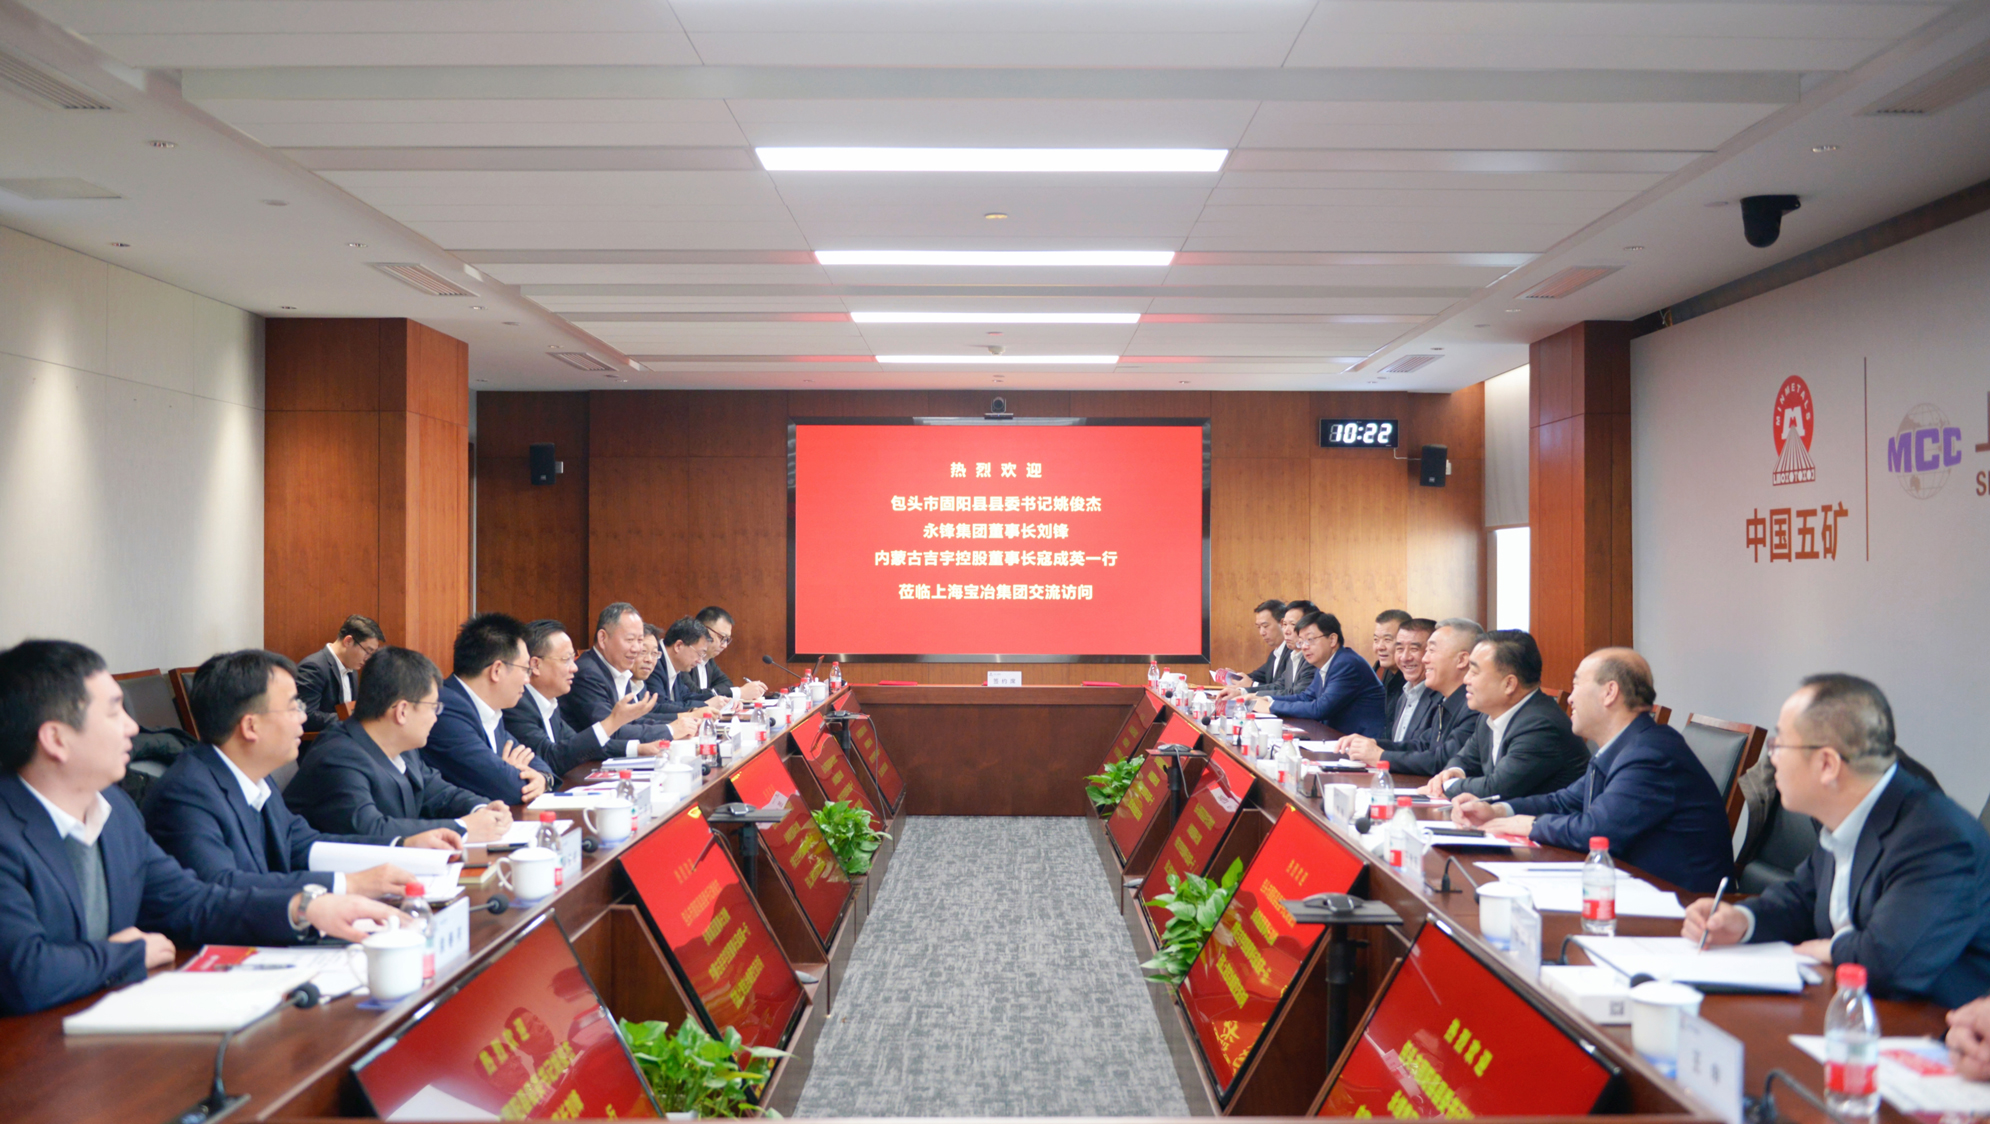 77779193永利与永锋集团、内蒙古吉宇控股签署战略合作协议